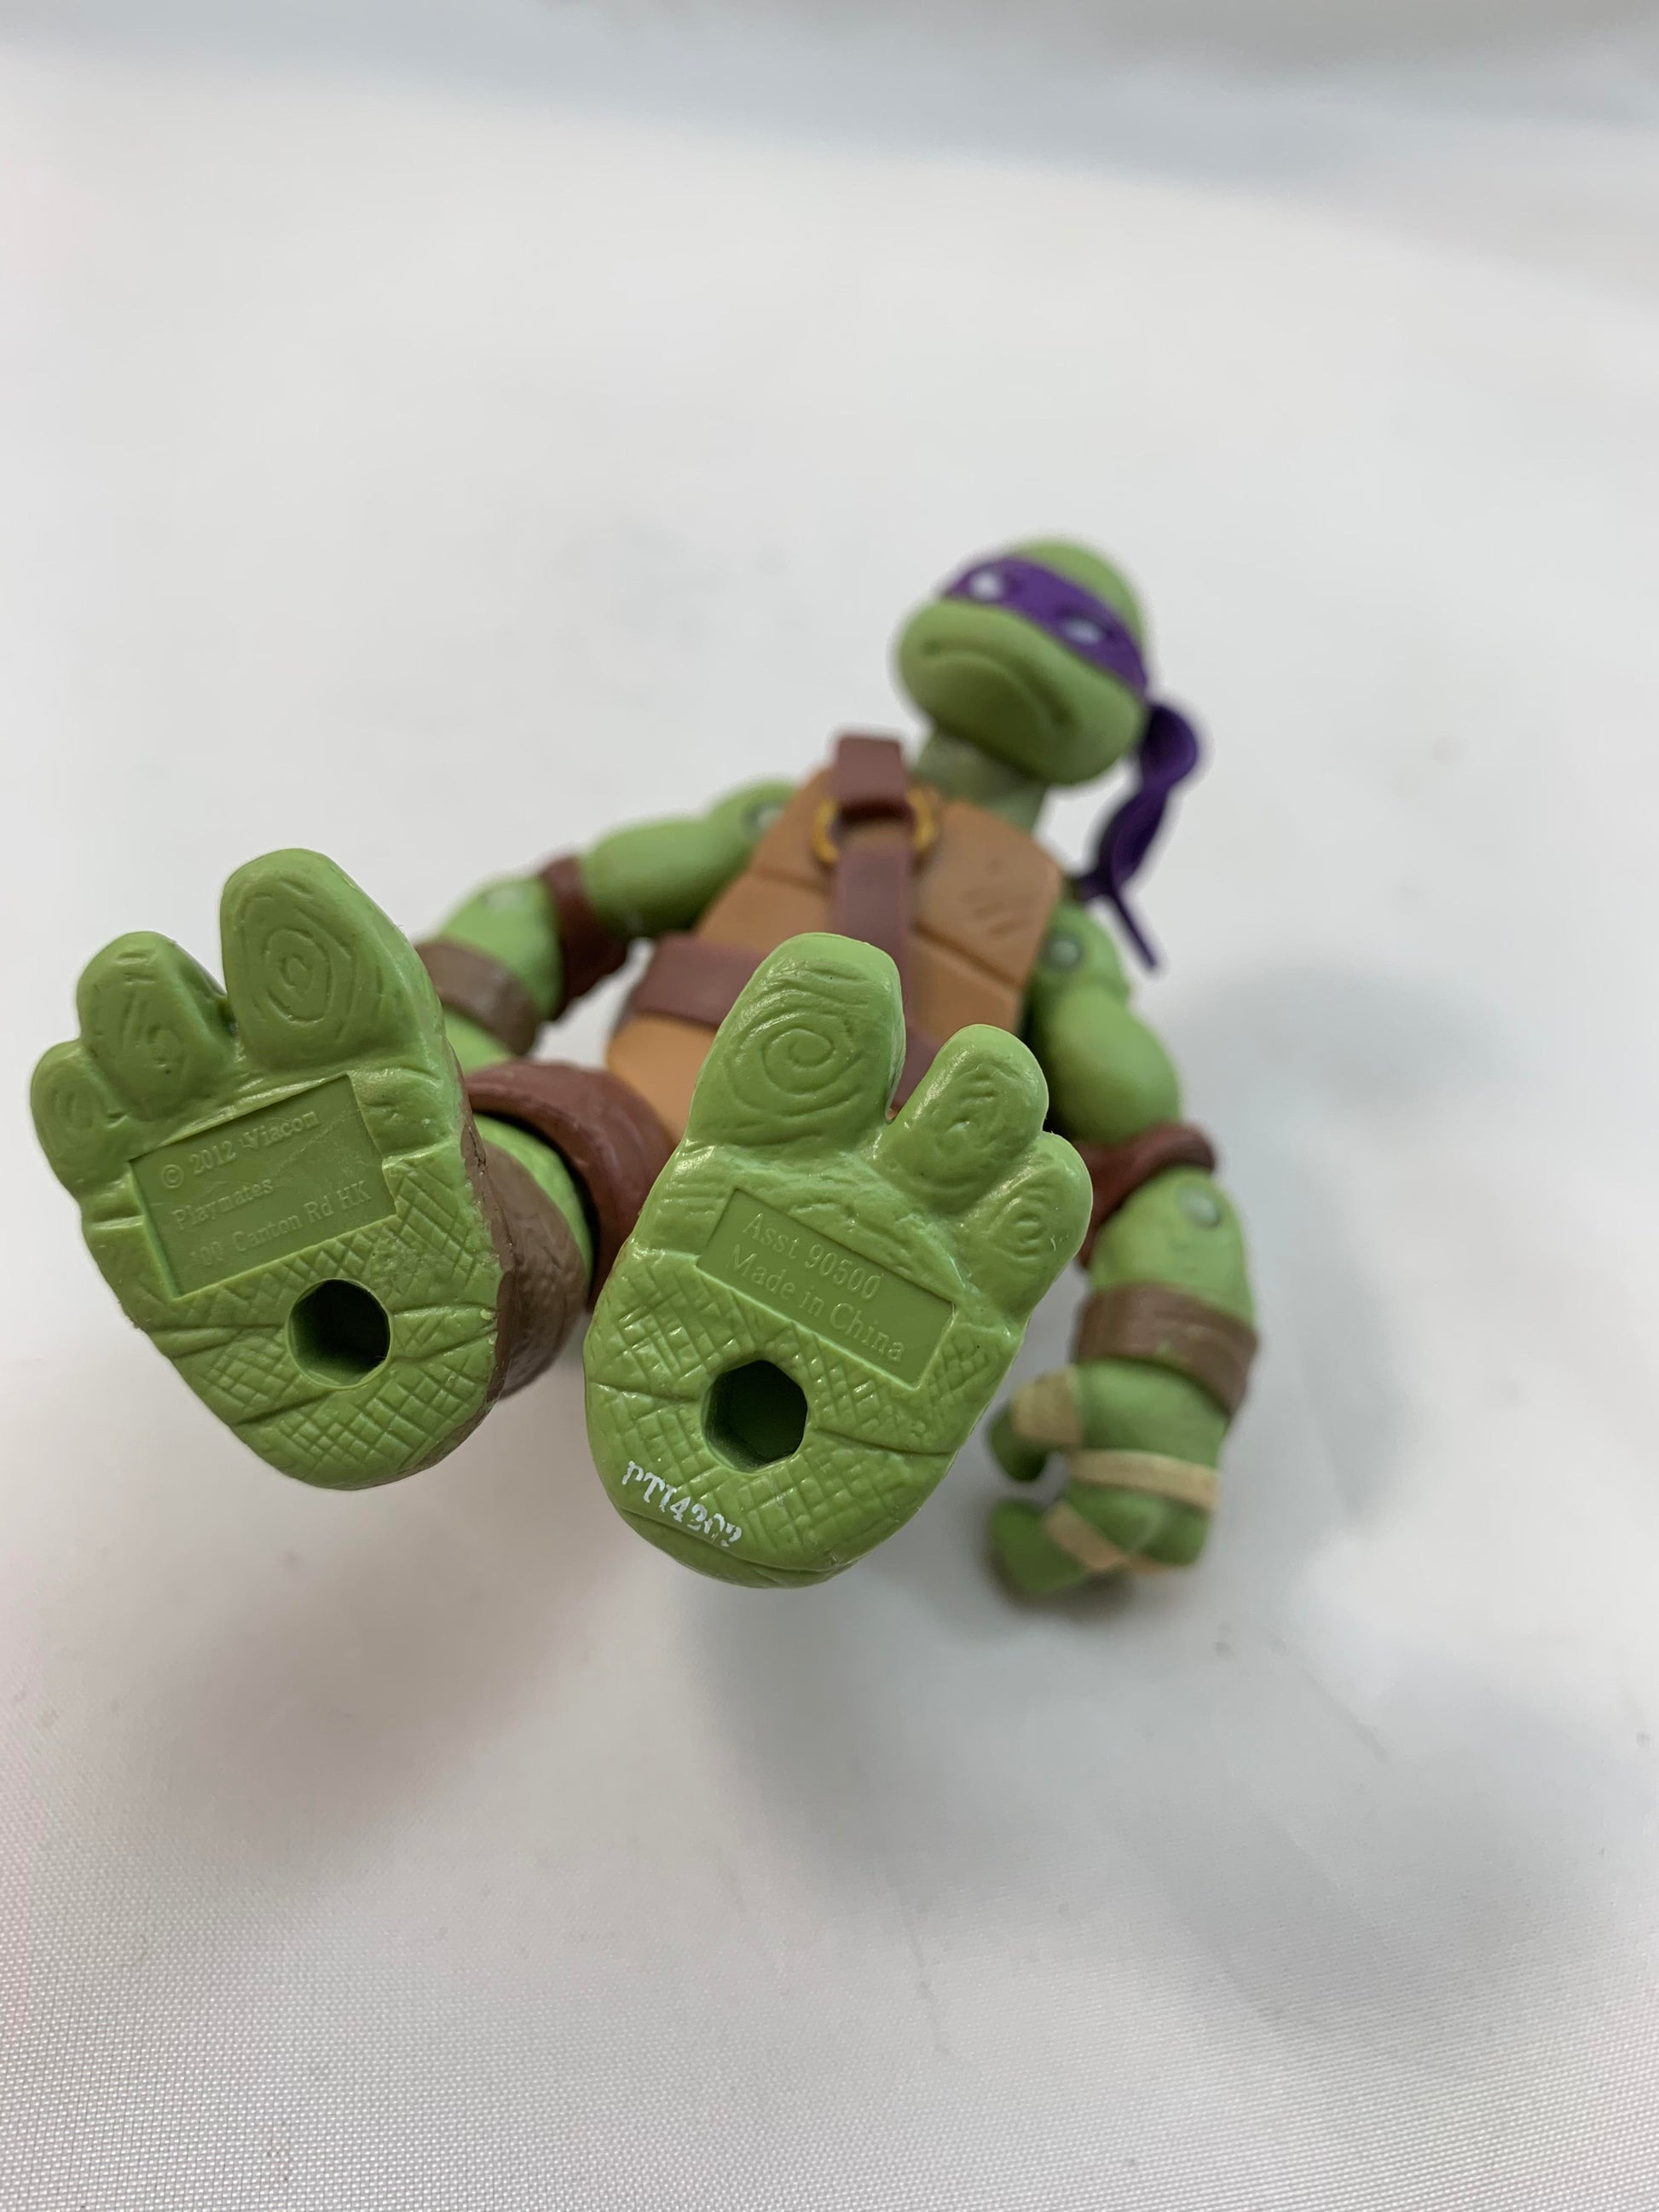 Playmates Viacom Teenage Mutant Ninja Turtles TMNT Donatello 2012 - Loose